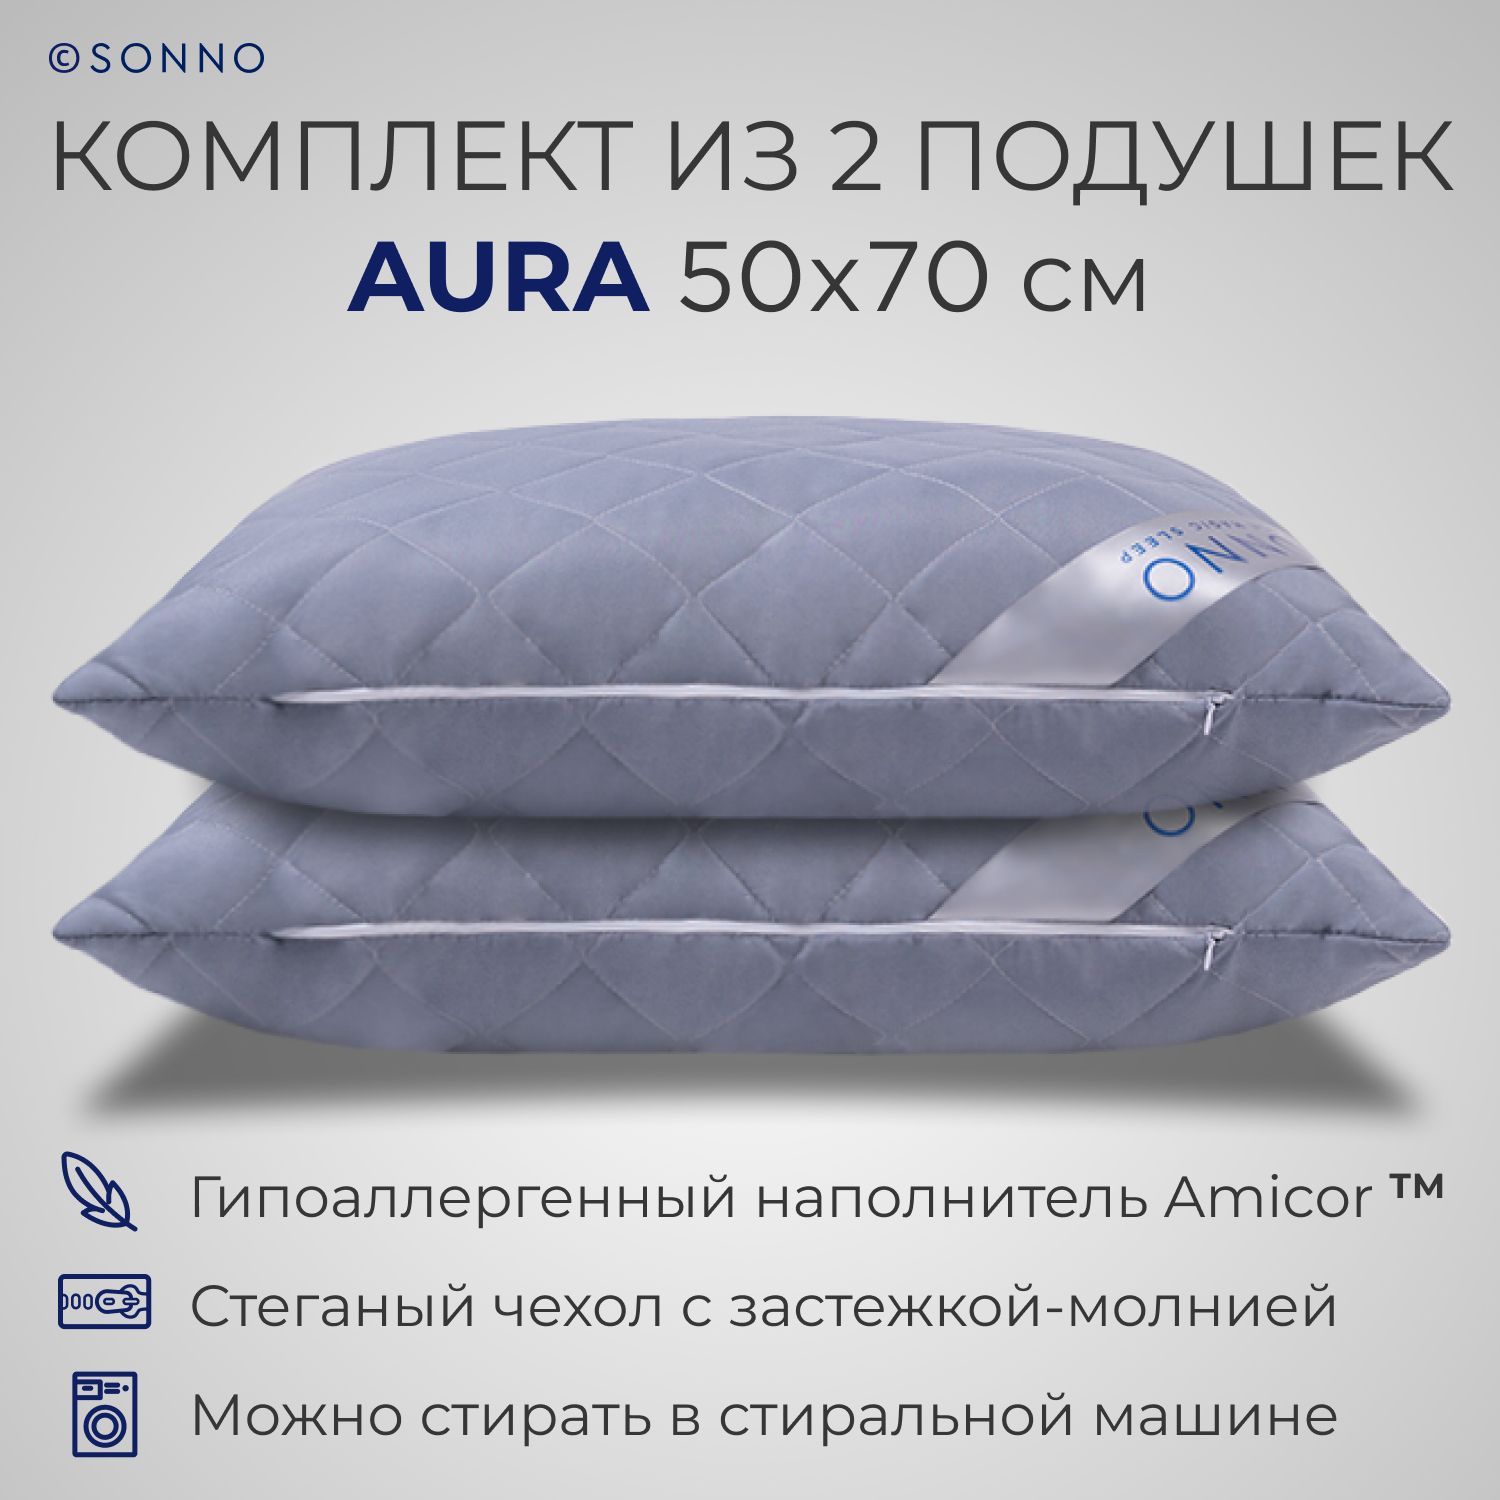 Комплект из двух подушек для сна SONNO AURA 50x70 Цвет Французский серый